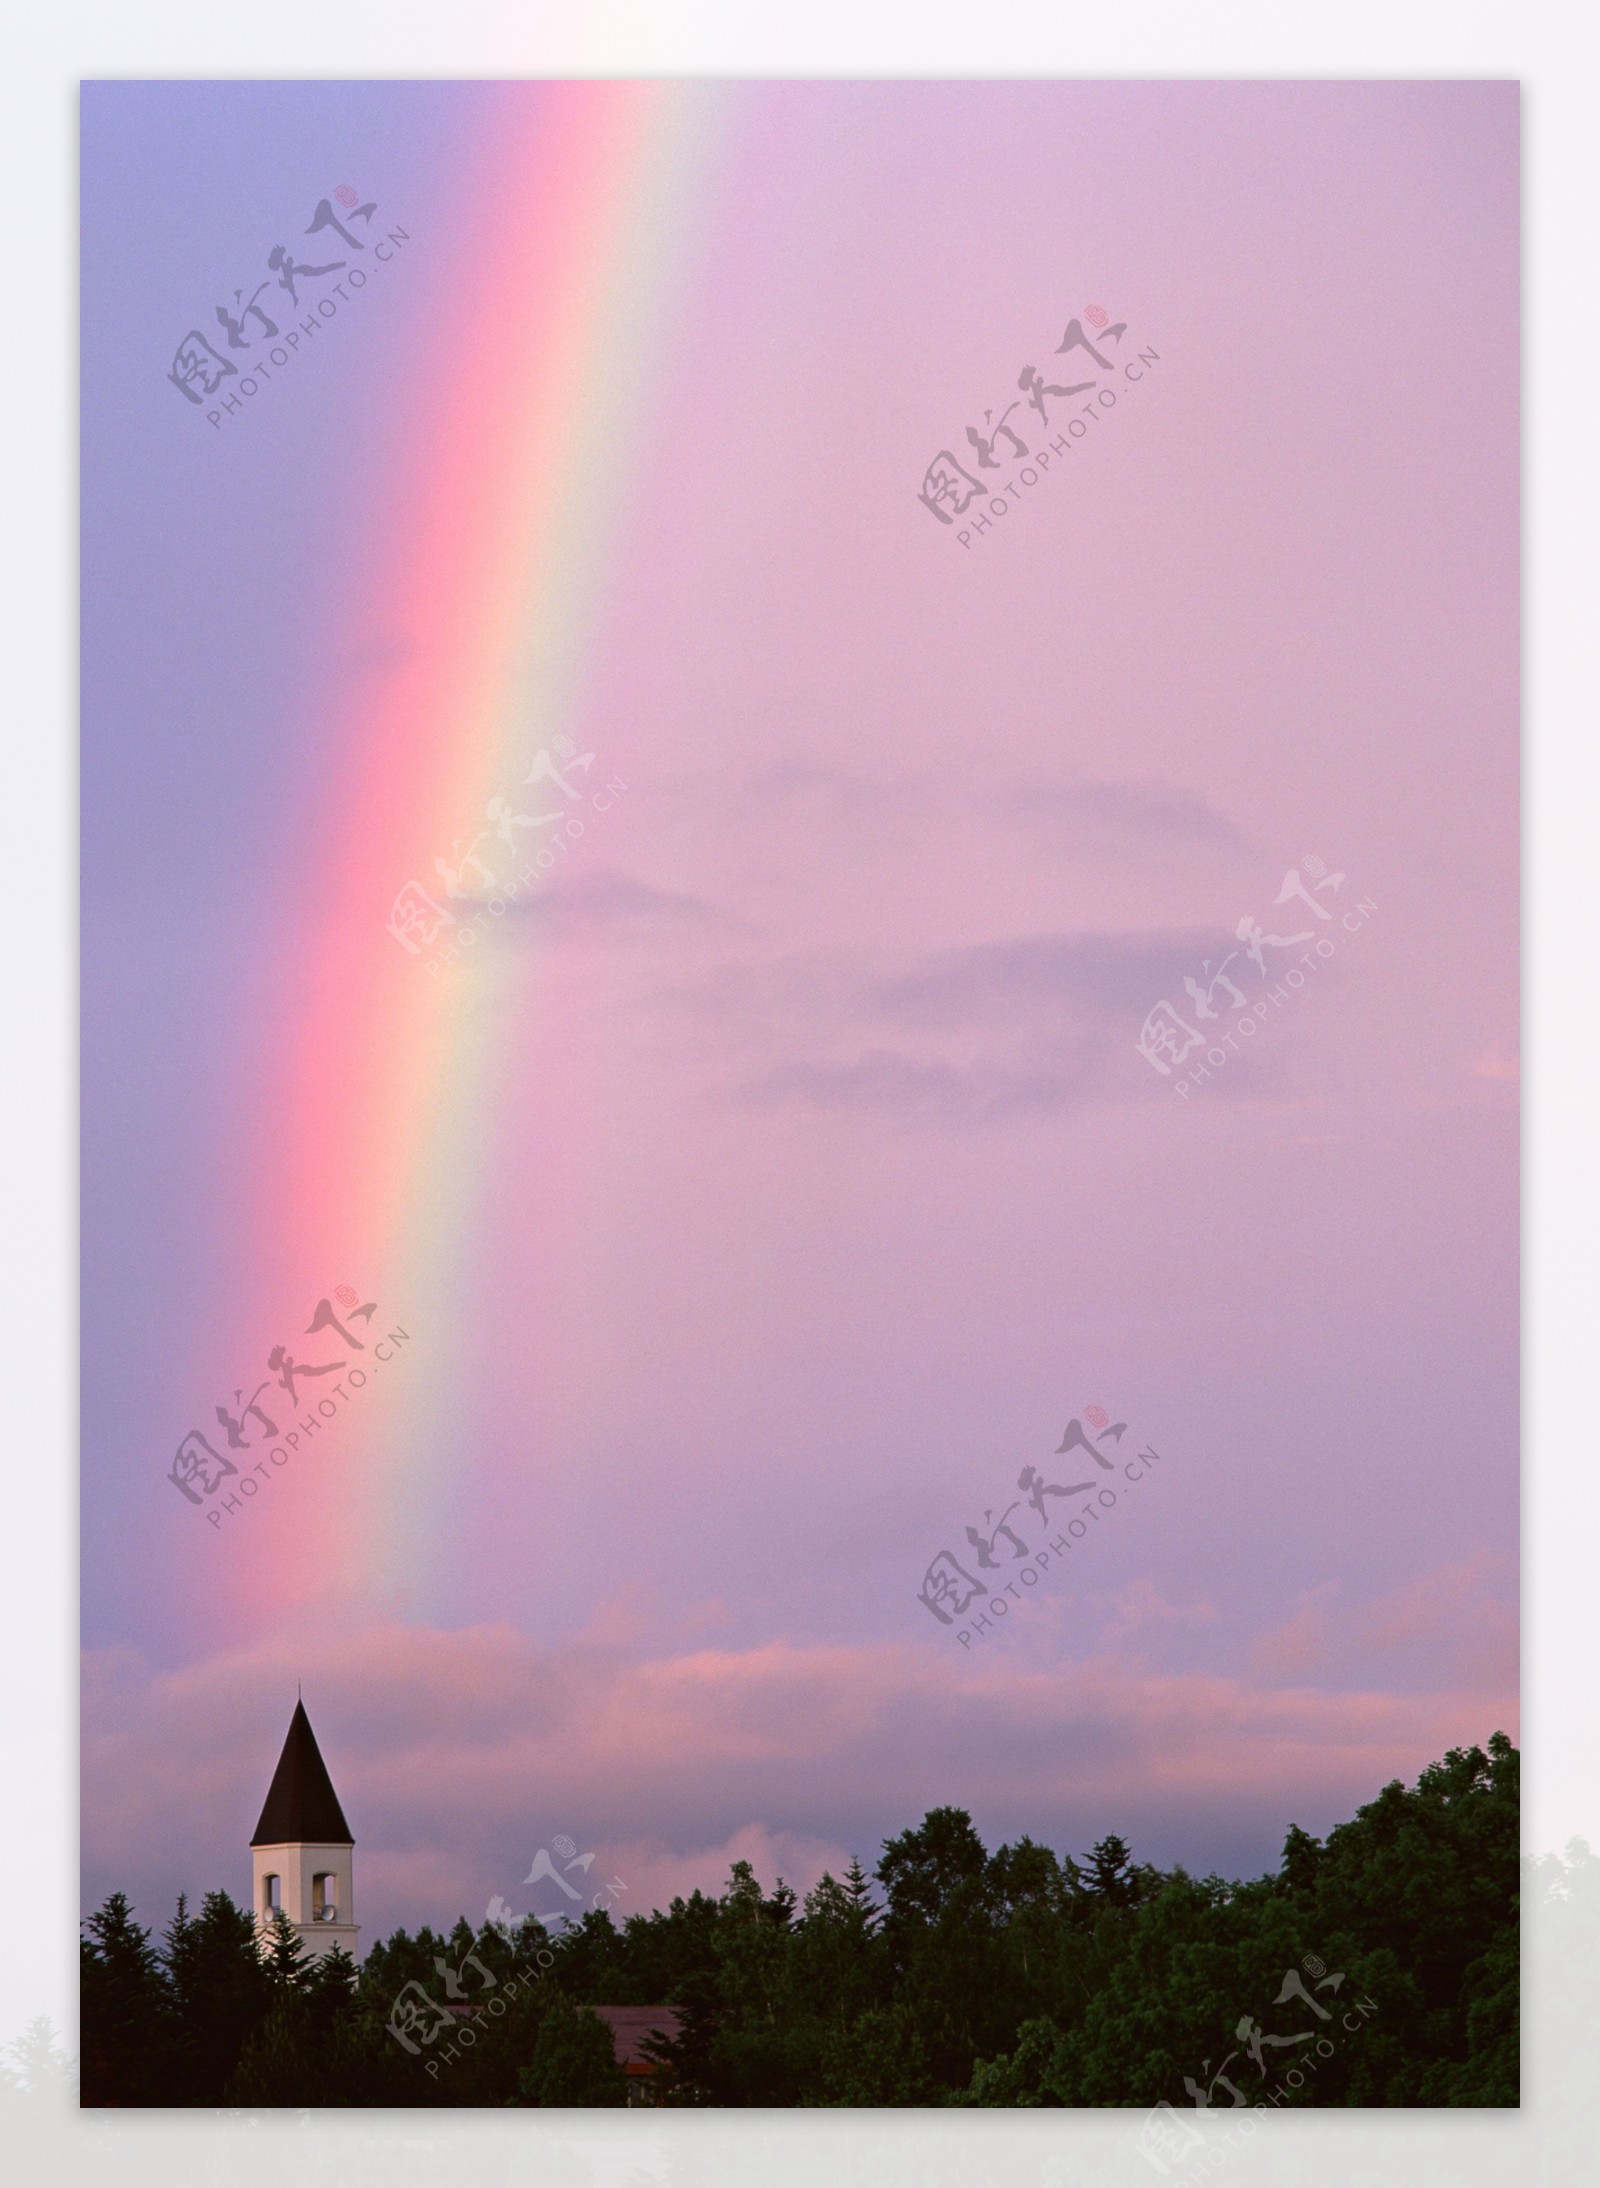 彩虹风景摄影图片